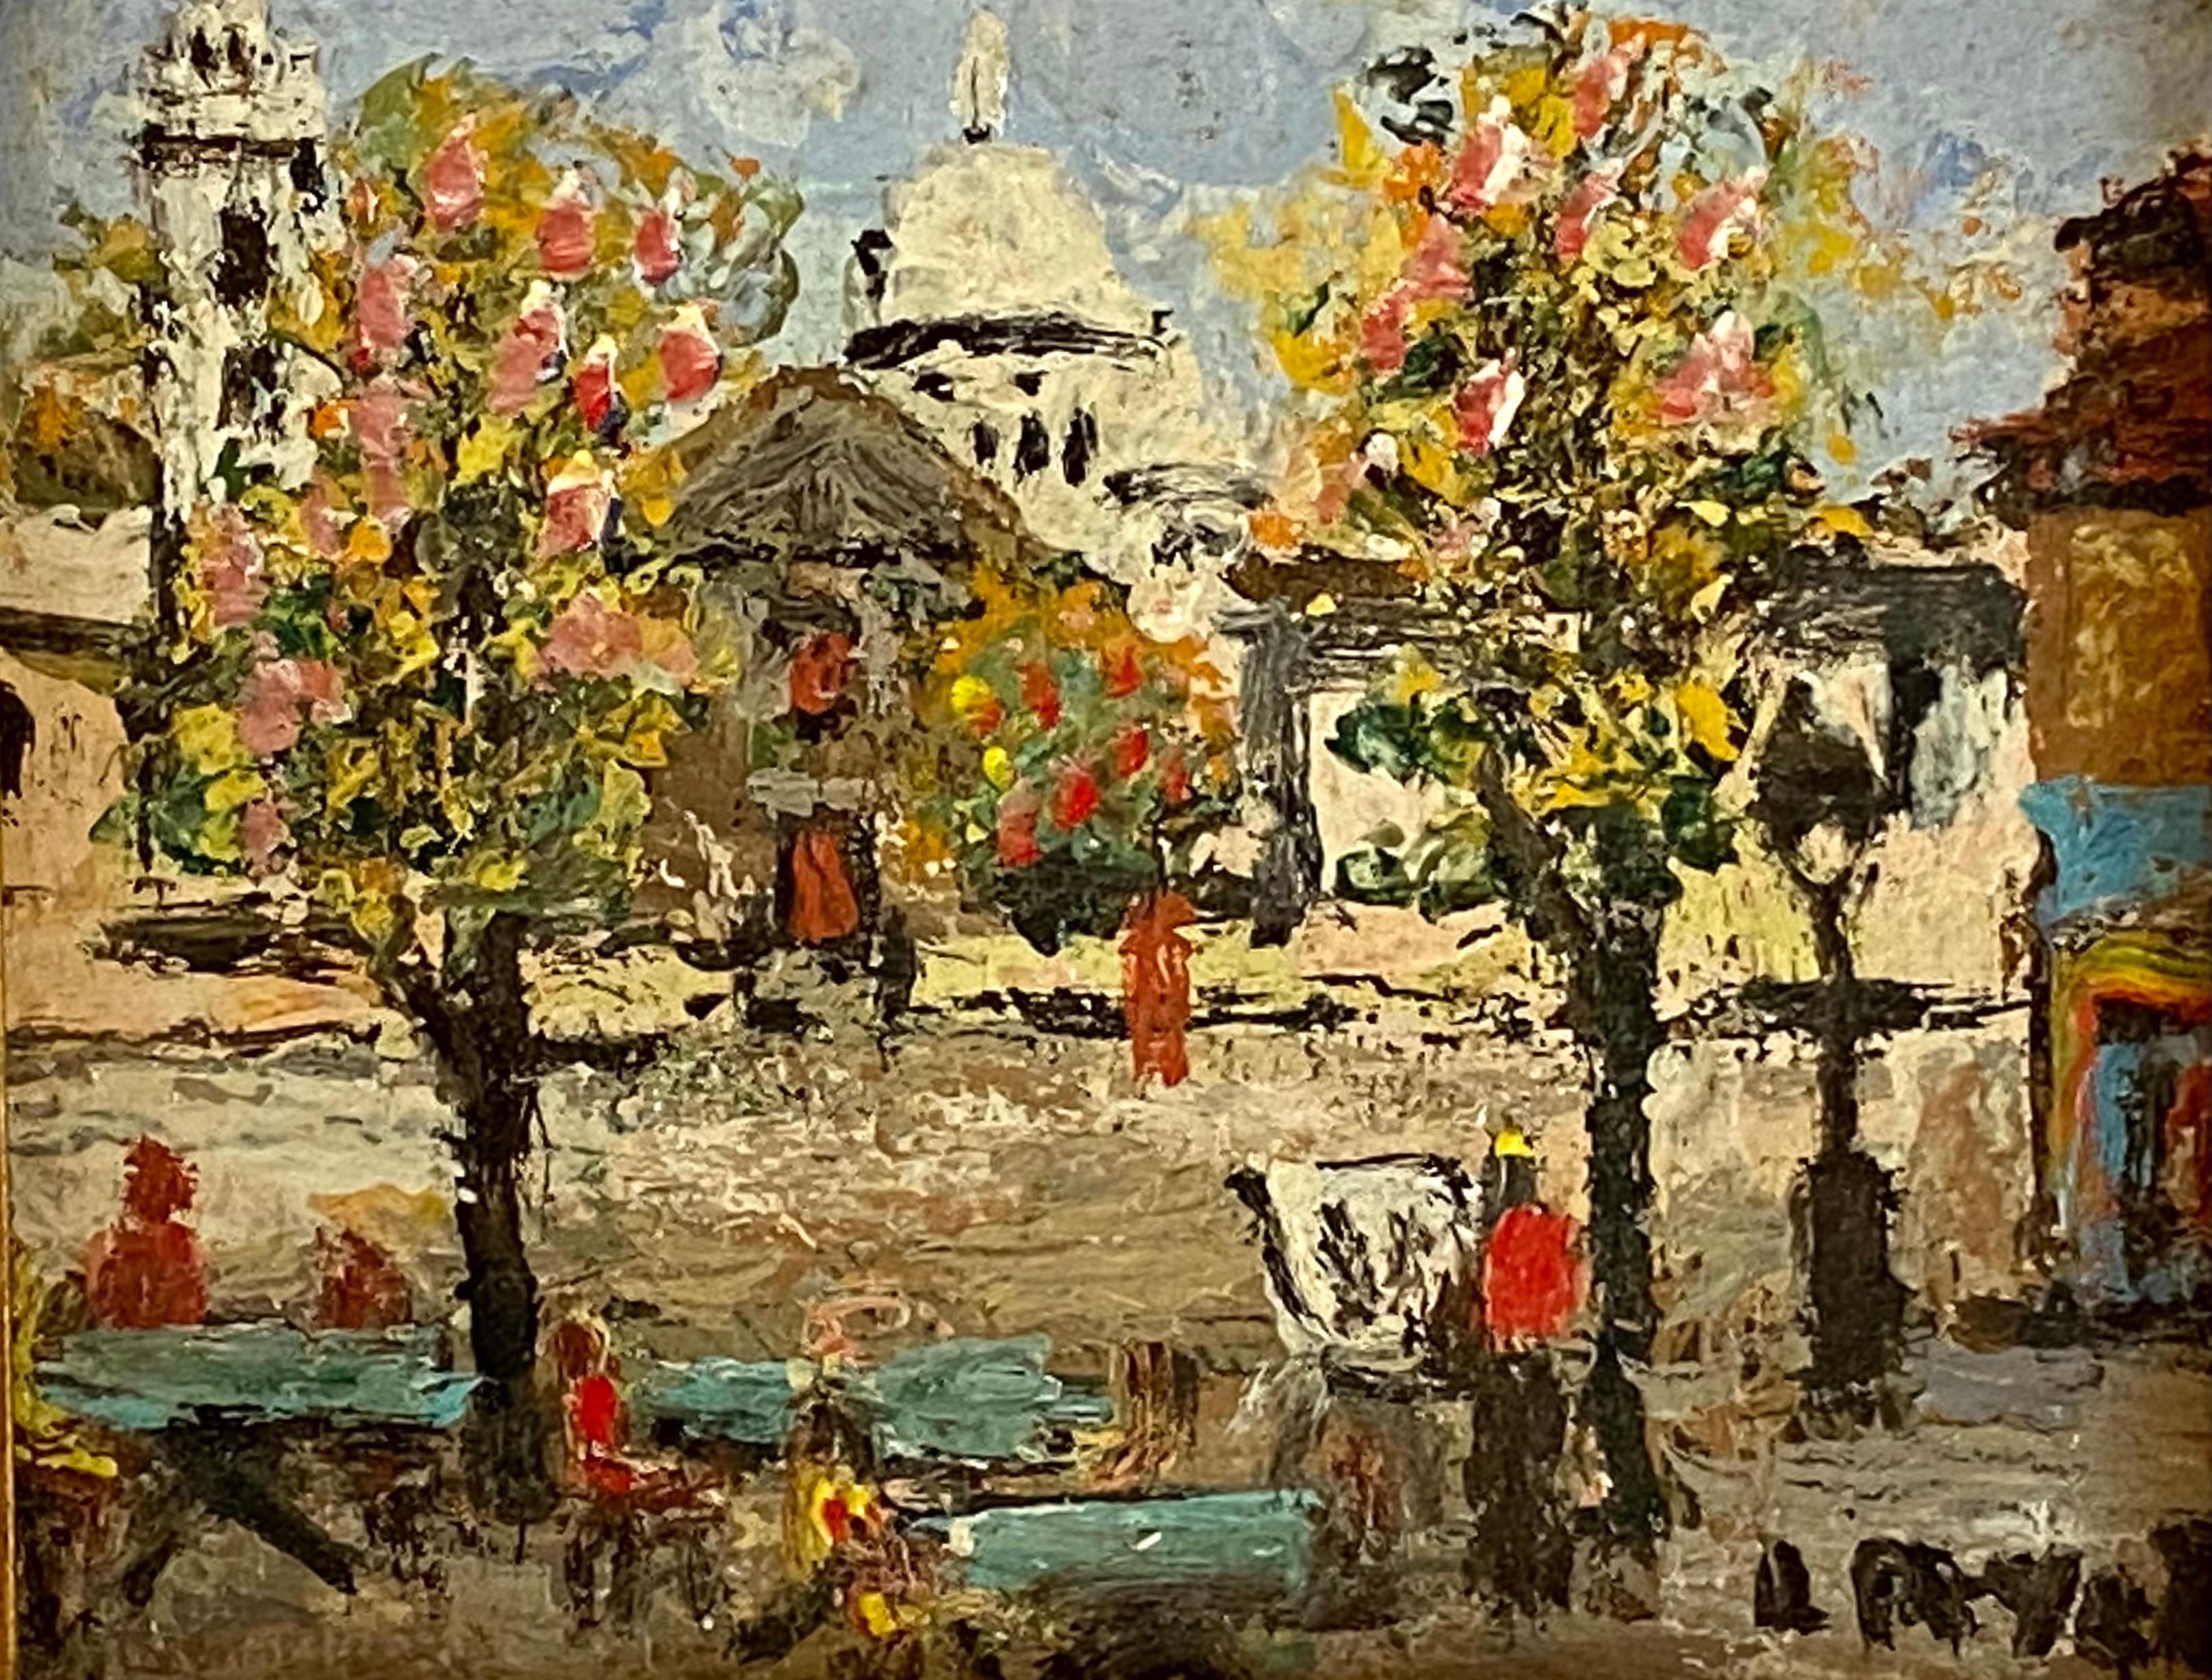 Unknown Landscape Painting - ”Place du Tertre, Montmartre”